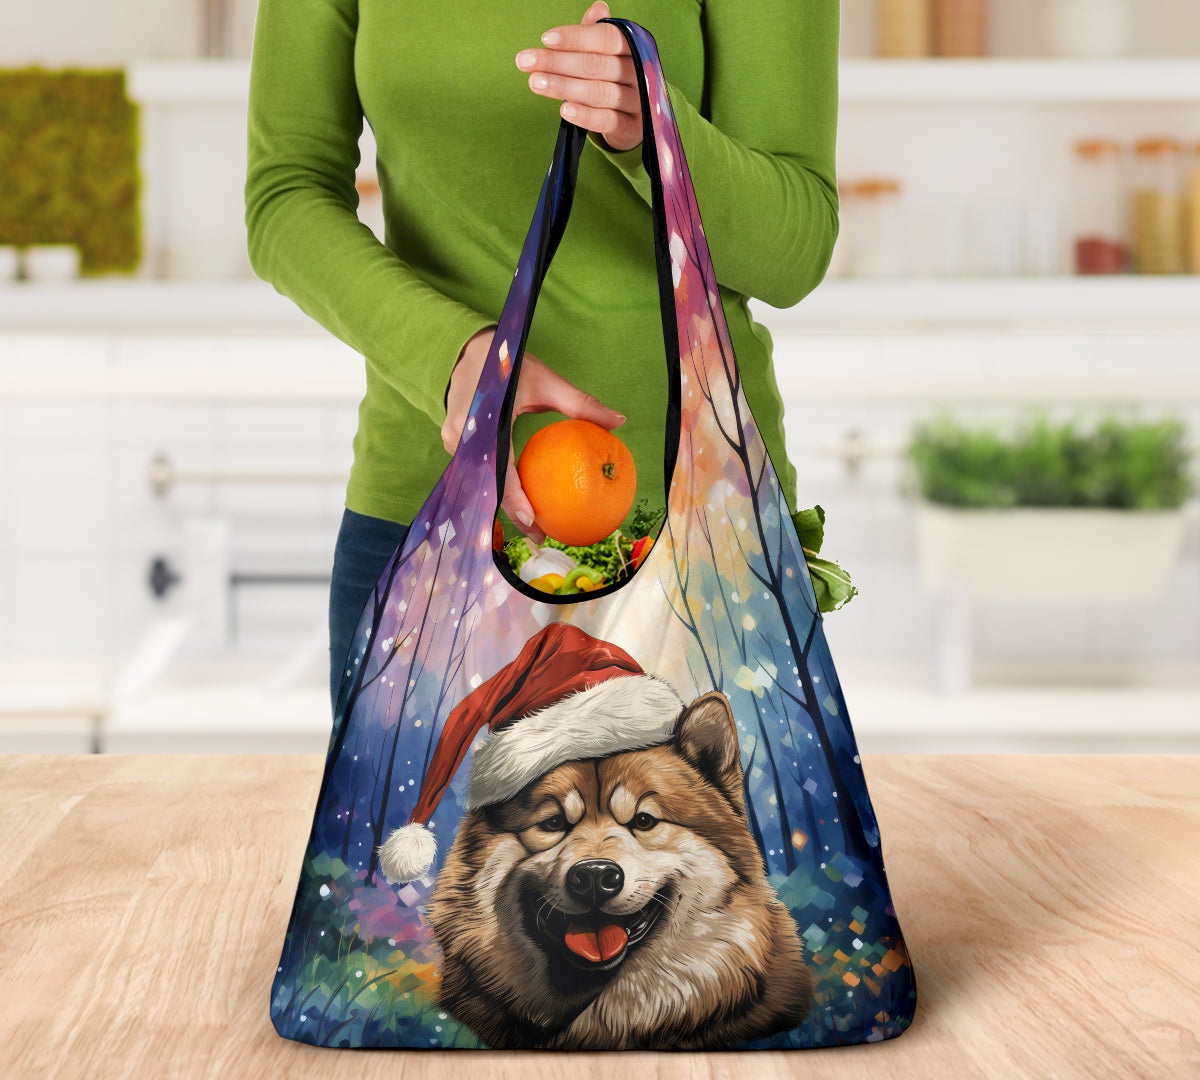 Akita Design 3 Pack Grocery Bags - 2023 Holiday - Christmas Print